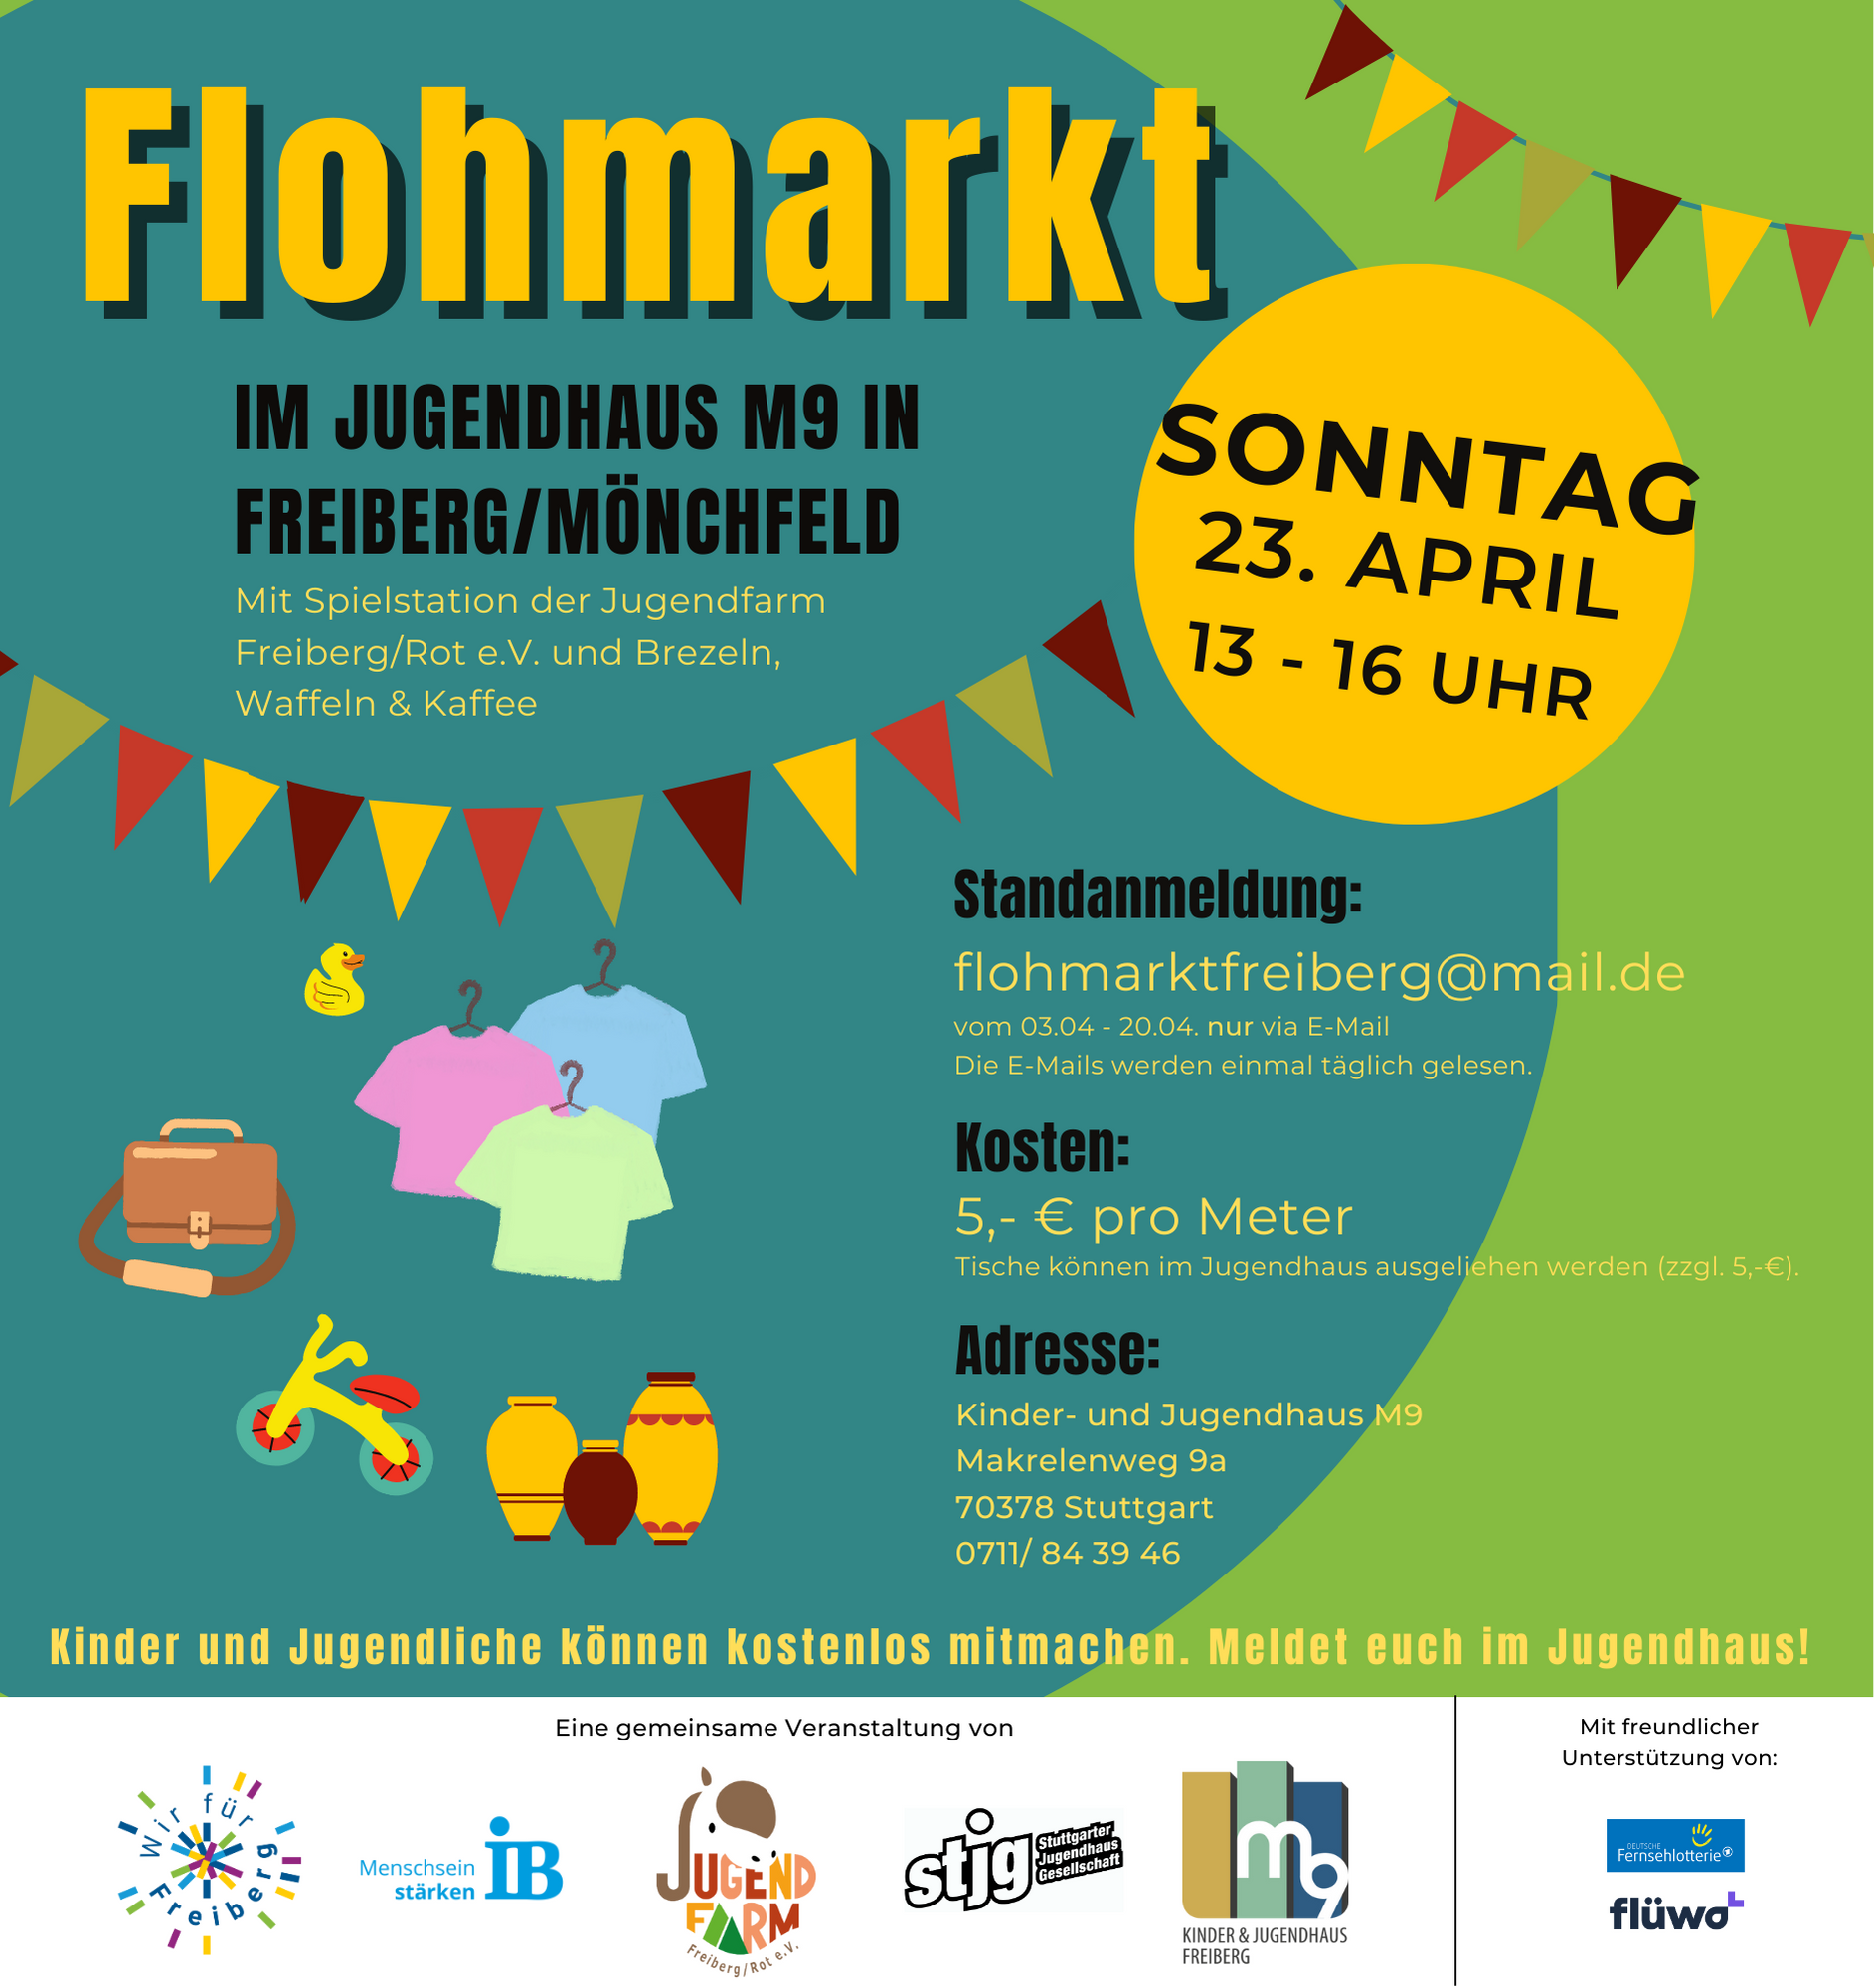 Flohmarkt im Jugendhaus M9 - Freiberg/Mönchfeld